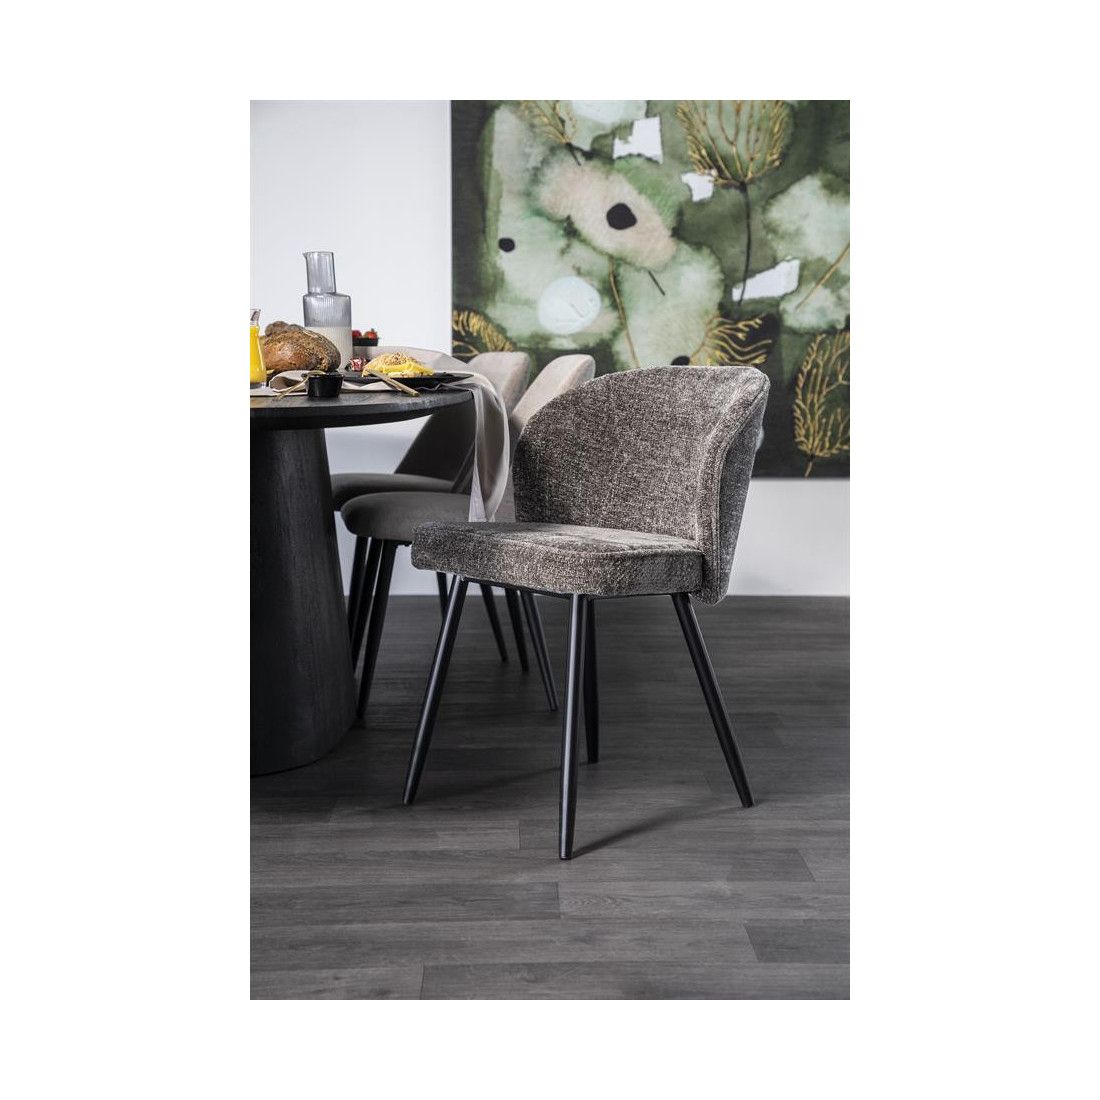 https://www.maisondunreve.com/120316-modal_default/chaise-confortable-tissu-dossier-arrondi-elegante.jpg